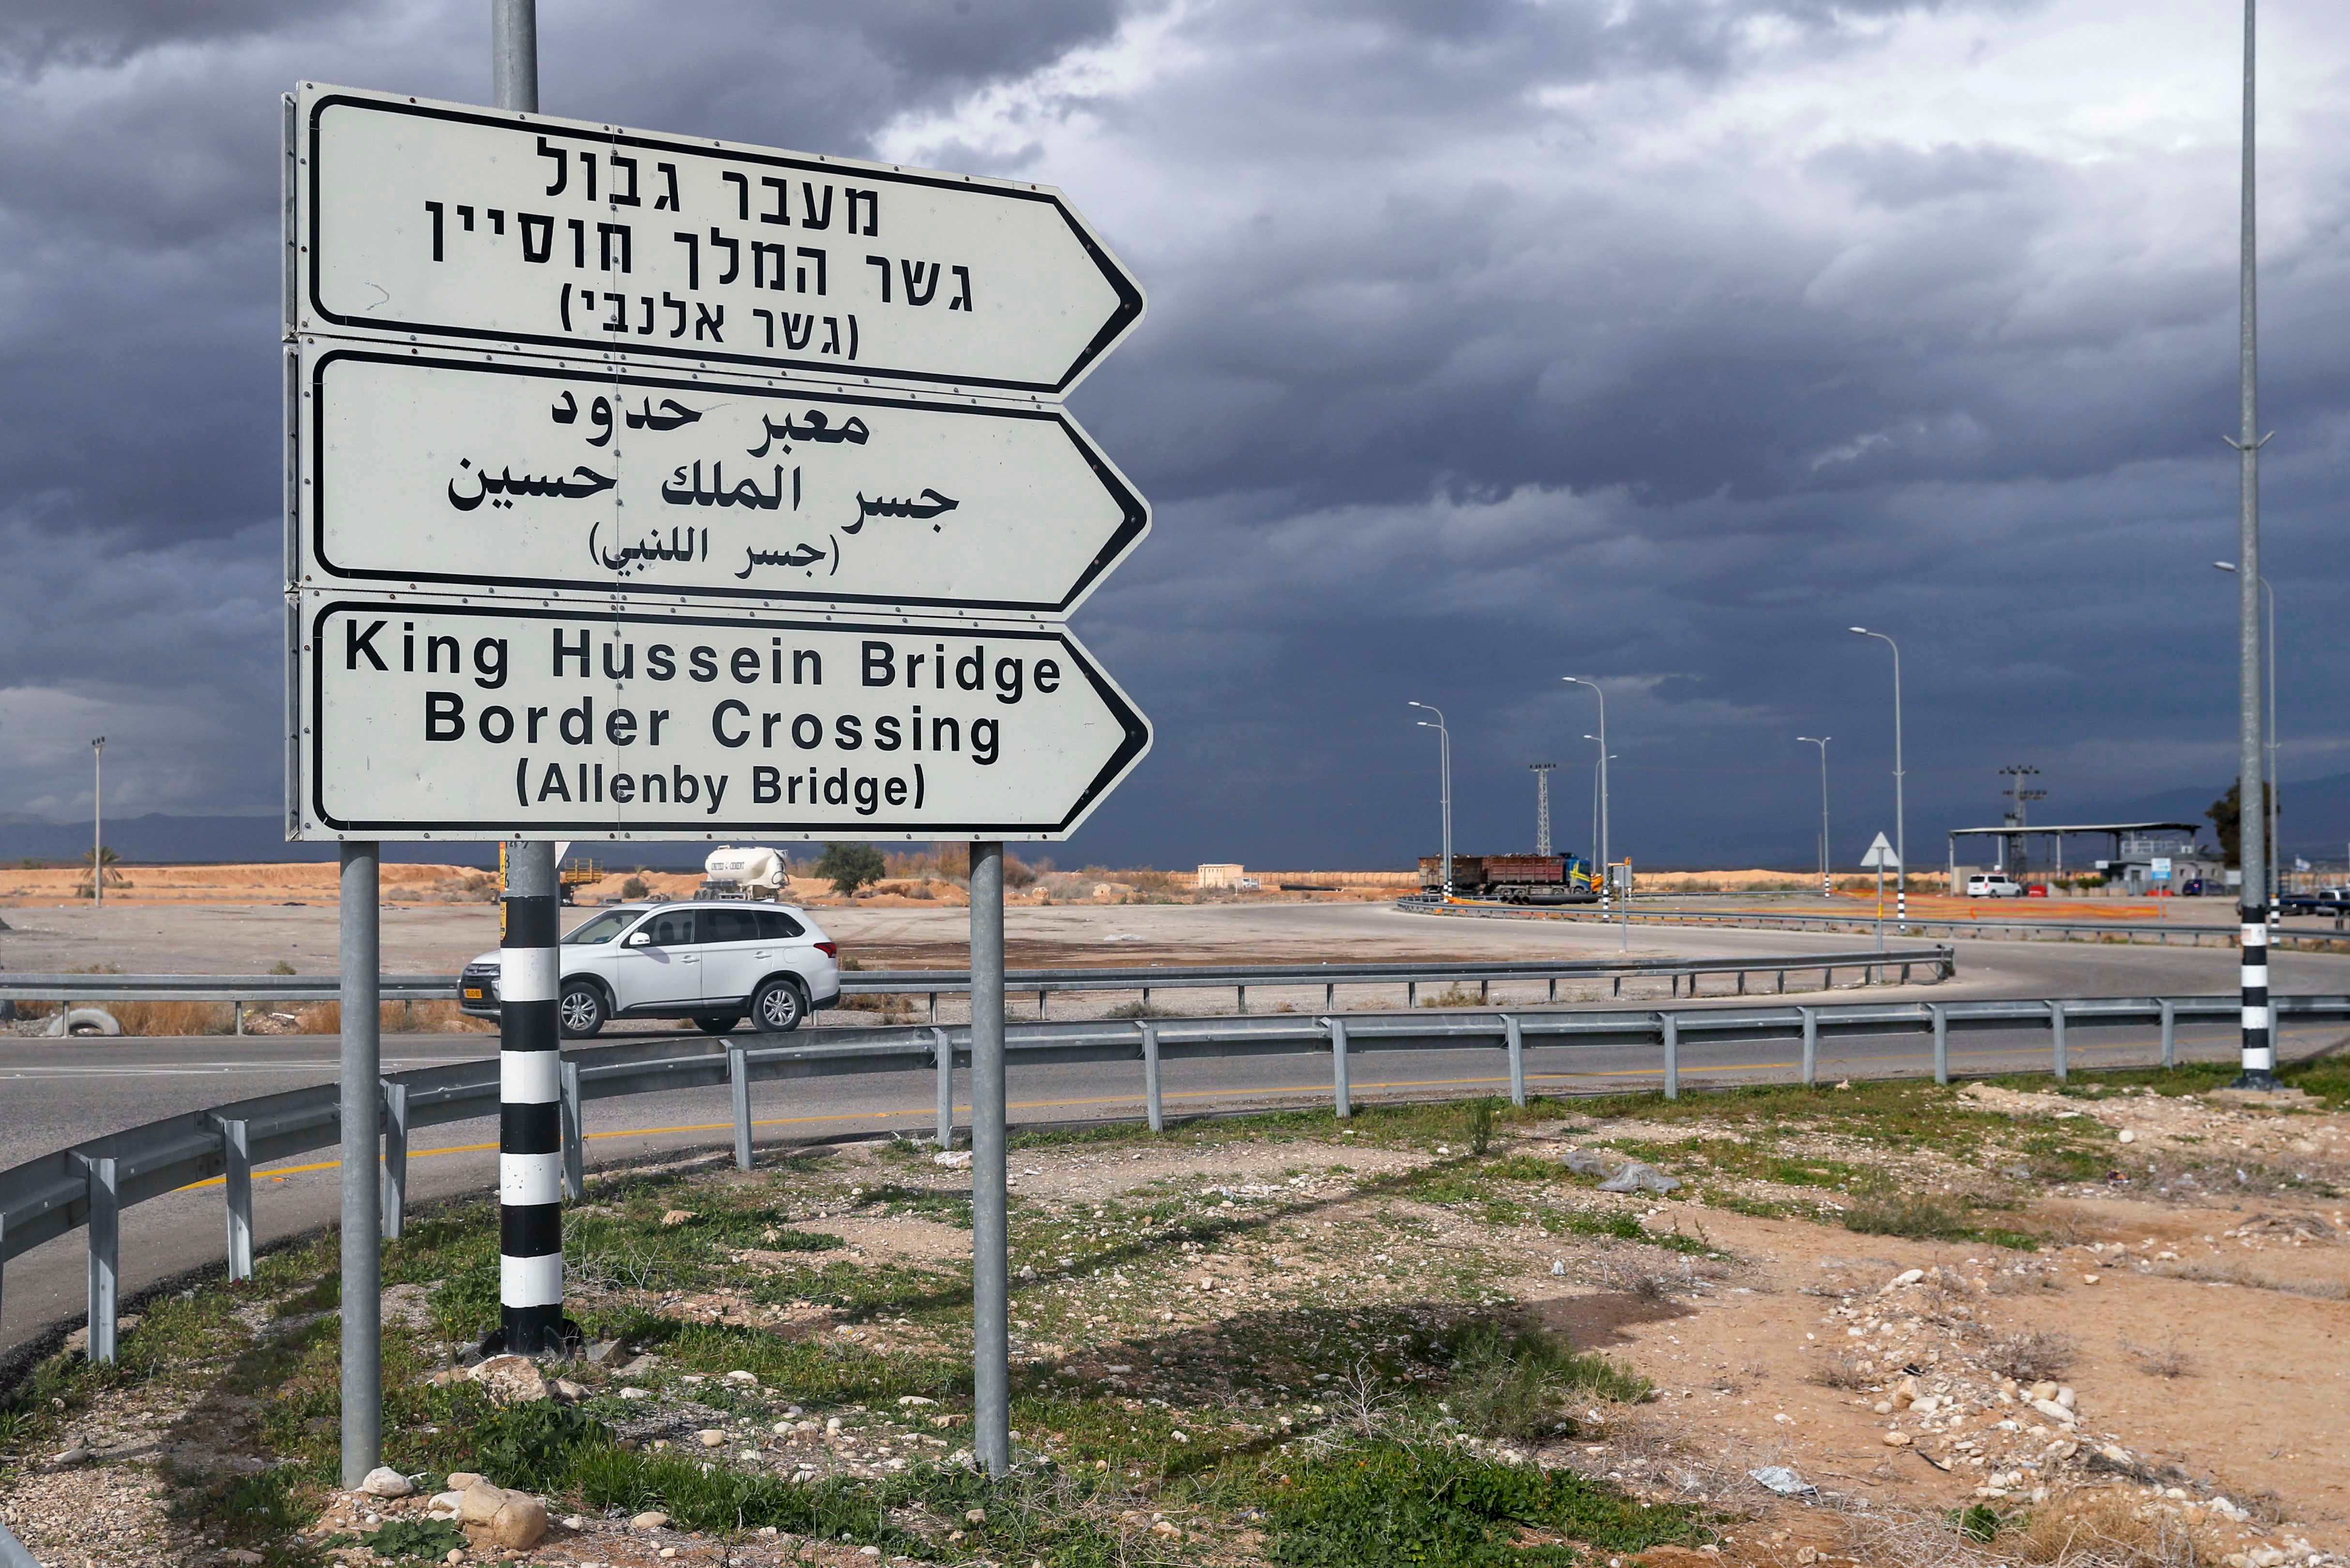 لافتة طريق تشير إلى معبر جسر اللنبي/الملك حسين باتجاه الأردن، مدينة أريحا في الضفة الغربية التي تحتلها إسرائيل. 